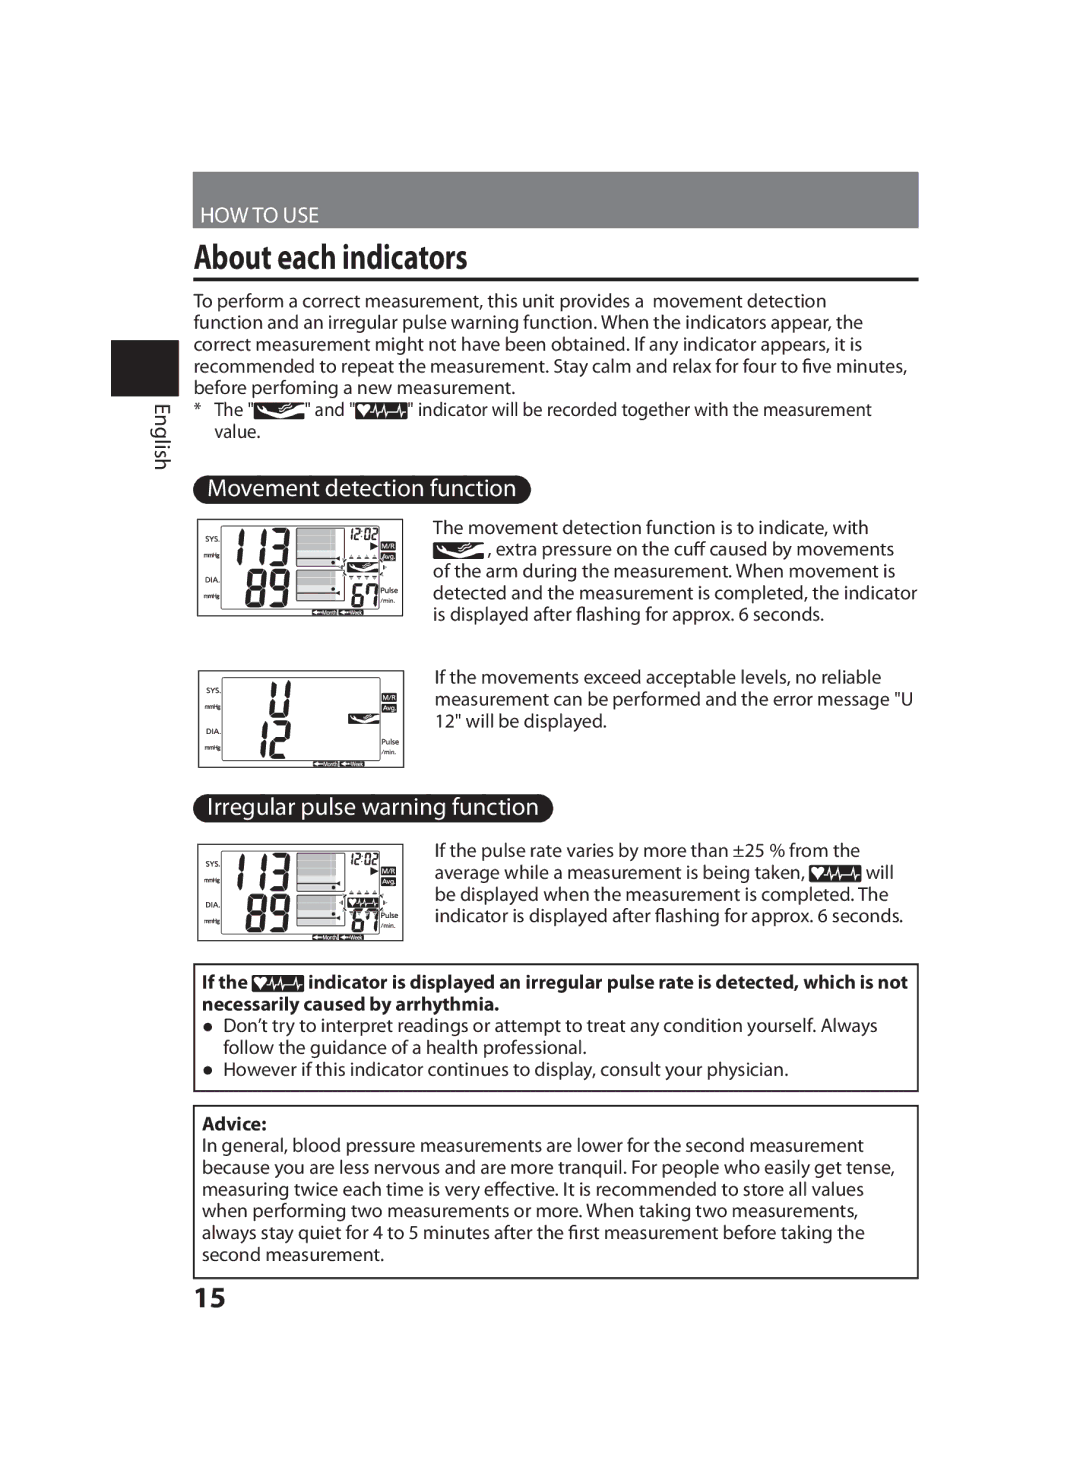 Panasonic EW-BU35 operating instructions About each indicators, Advice 